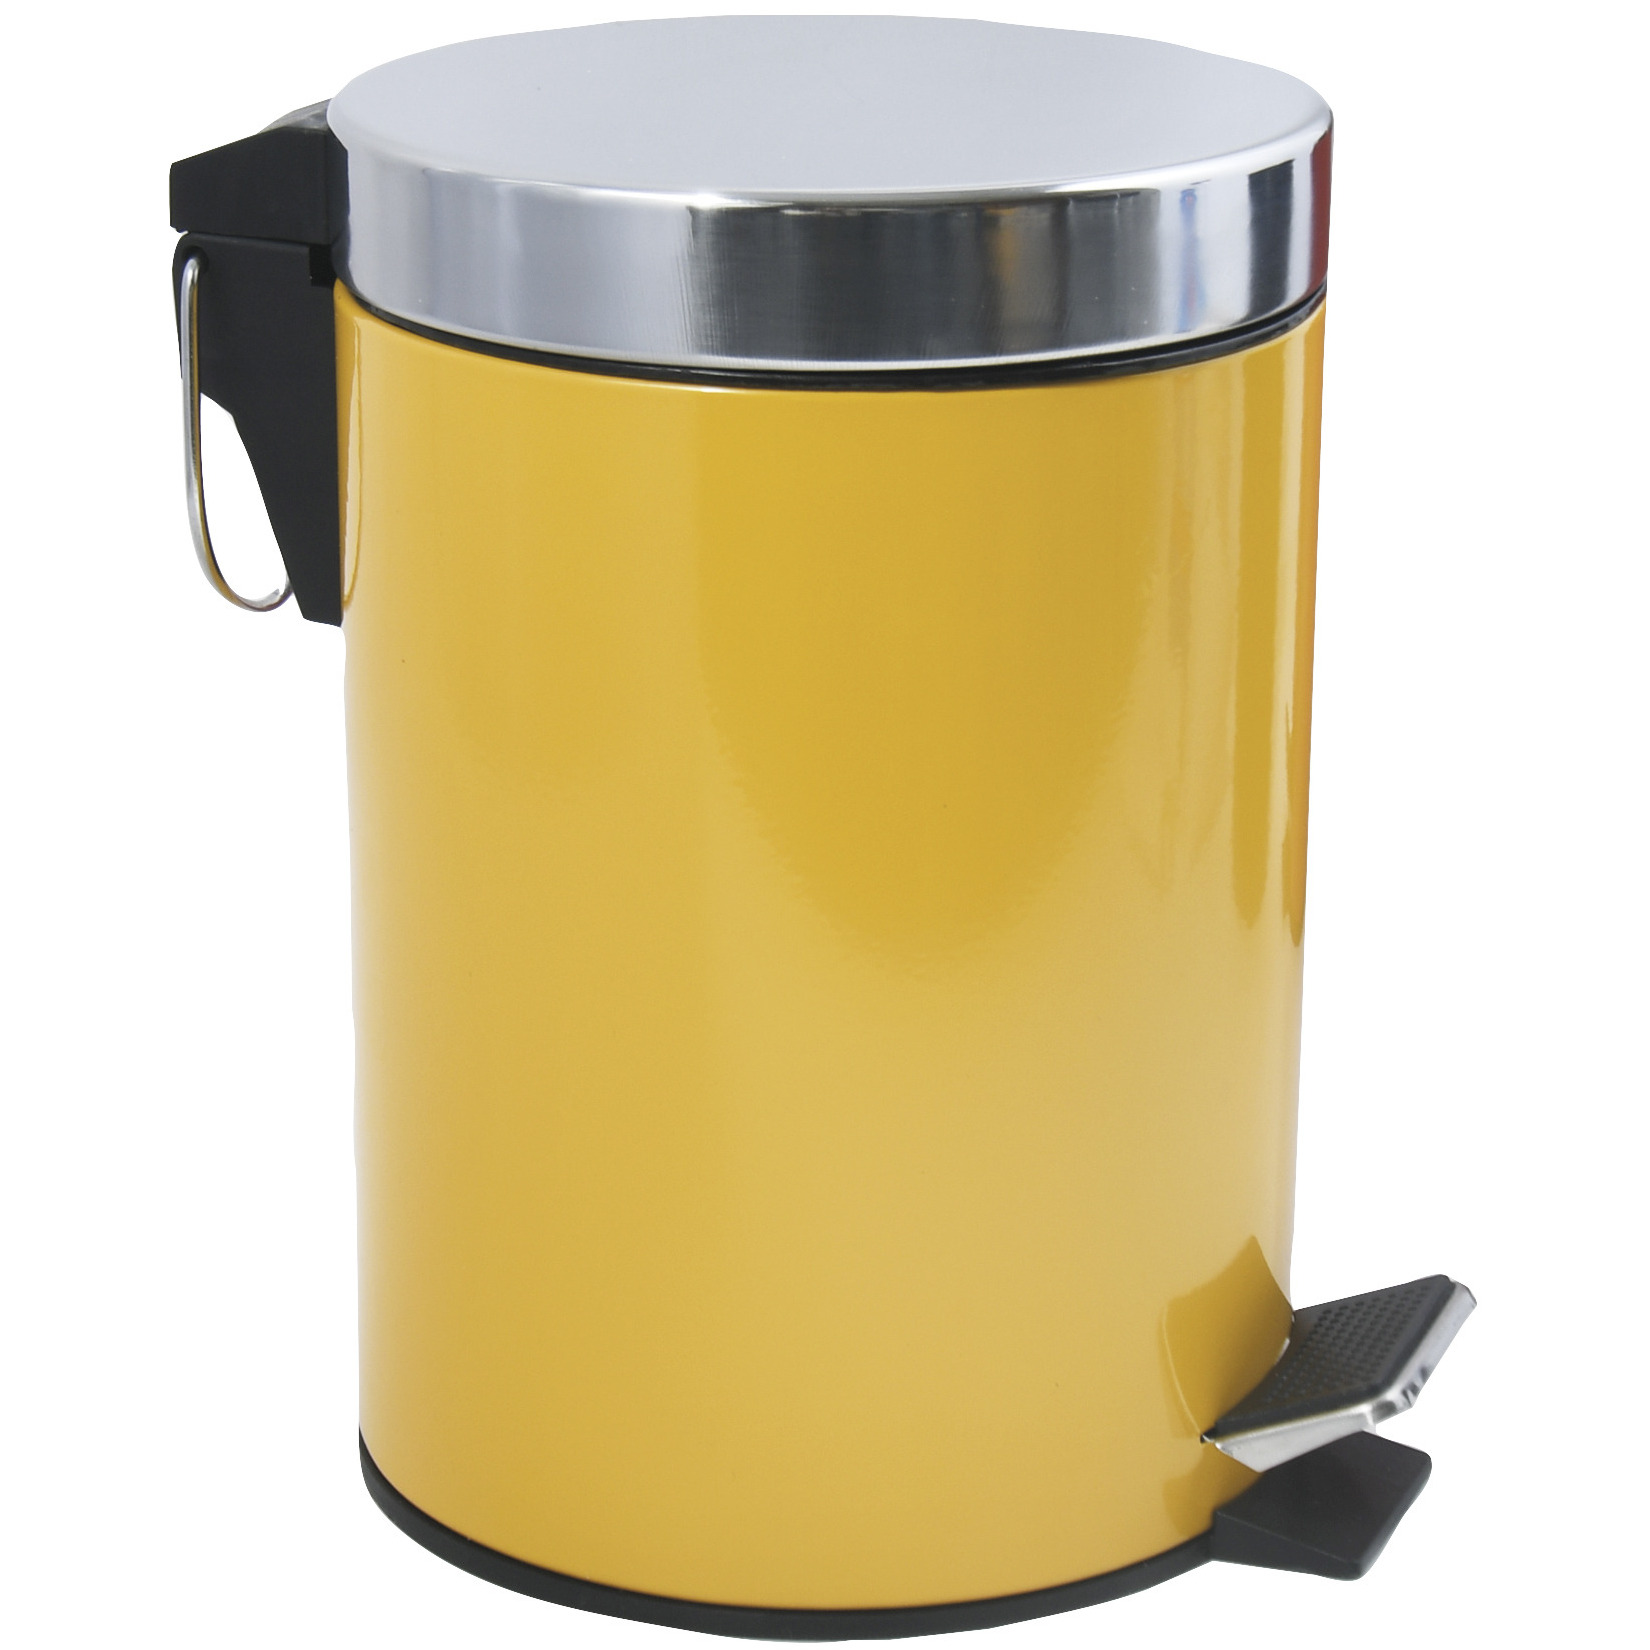 Prullenbak-pedaalemmer metaal saffraan geel 3 liter 17 x 25 cm Badkamer-toilet